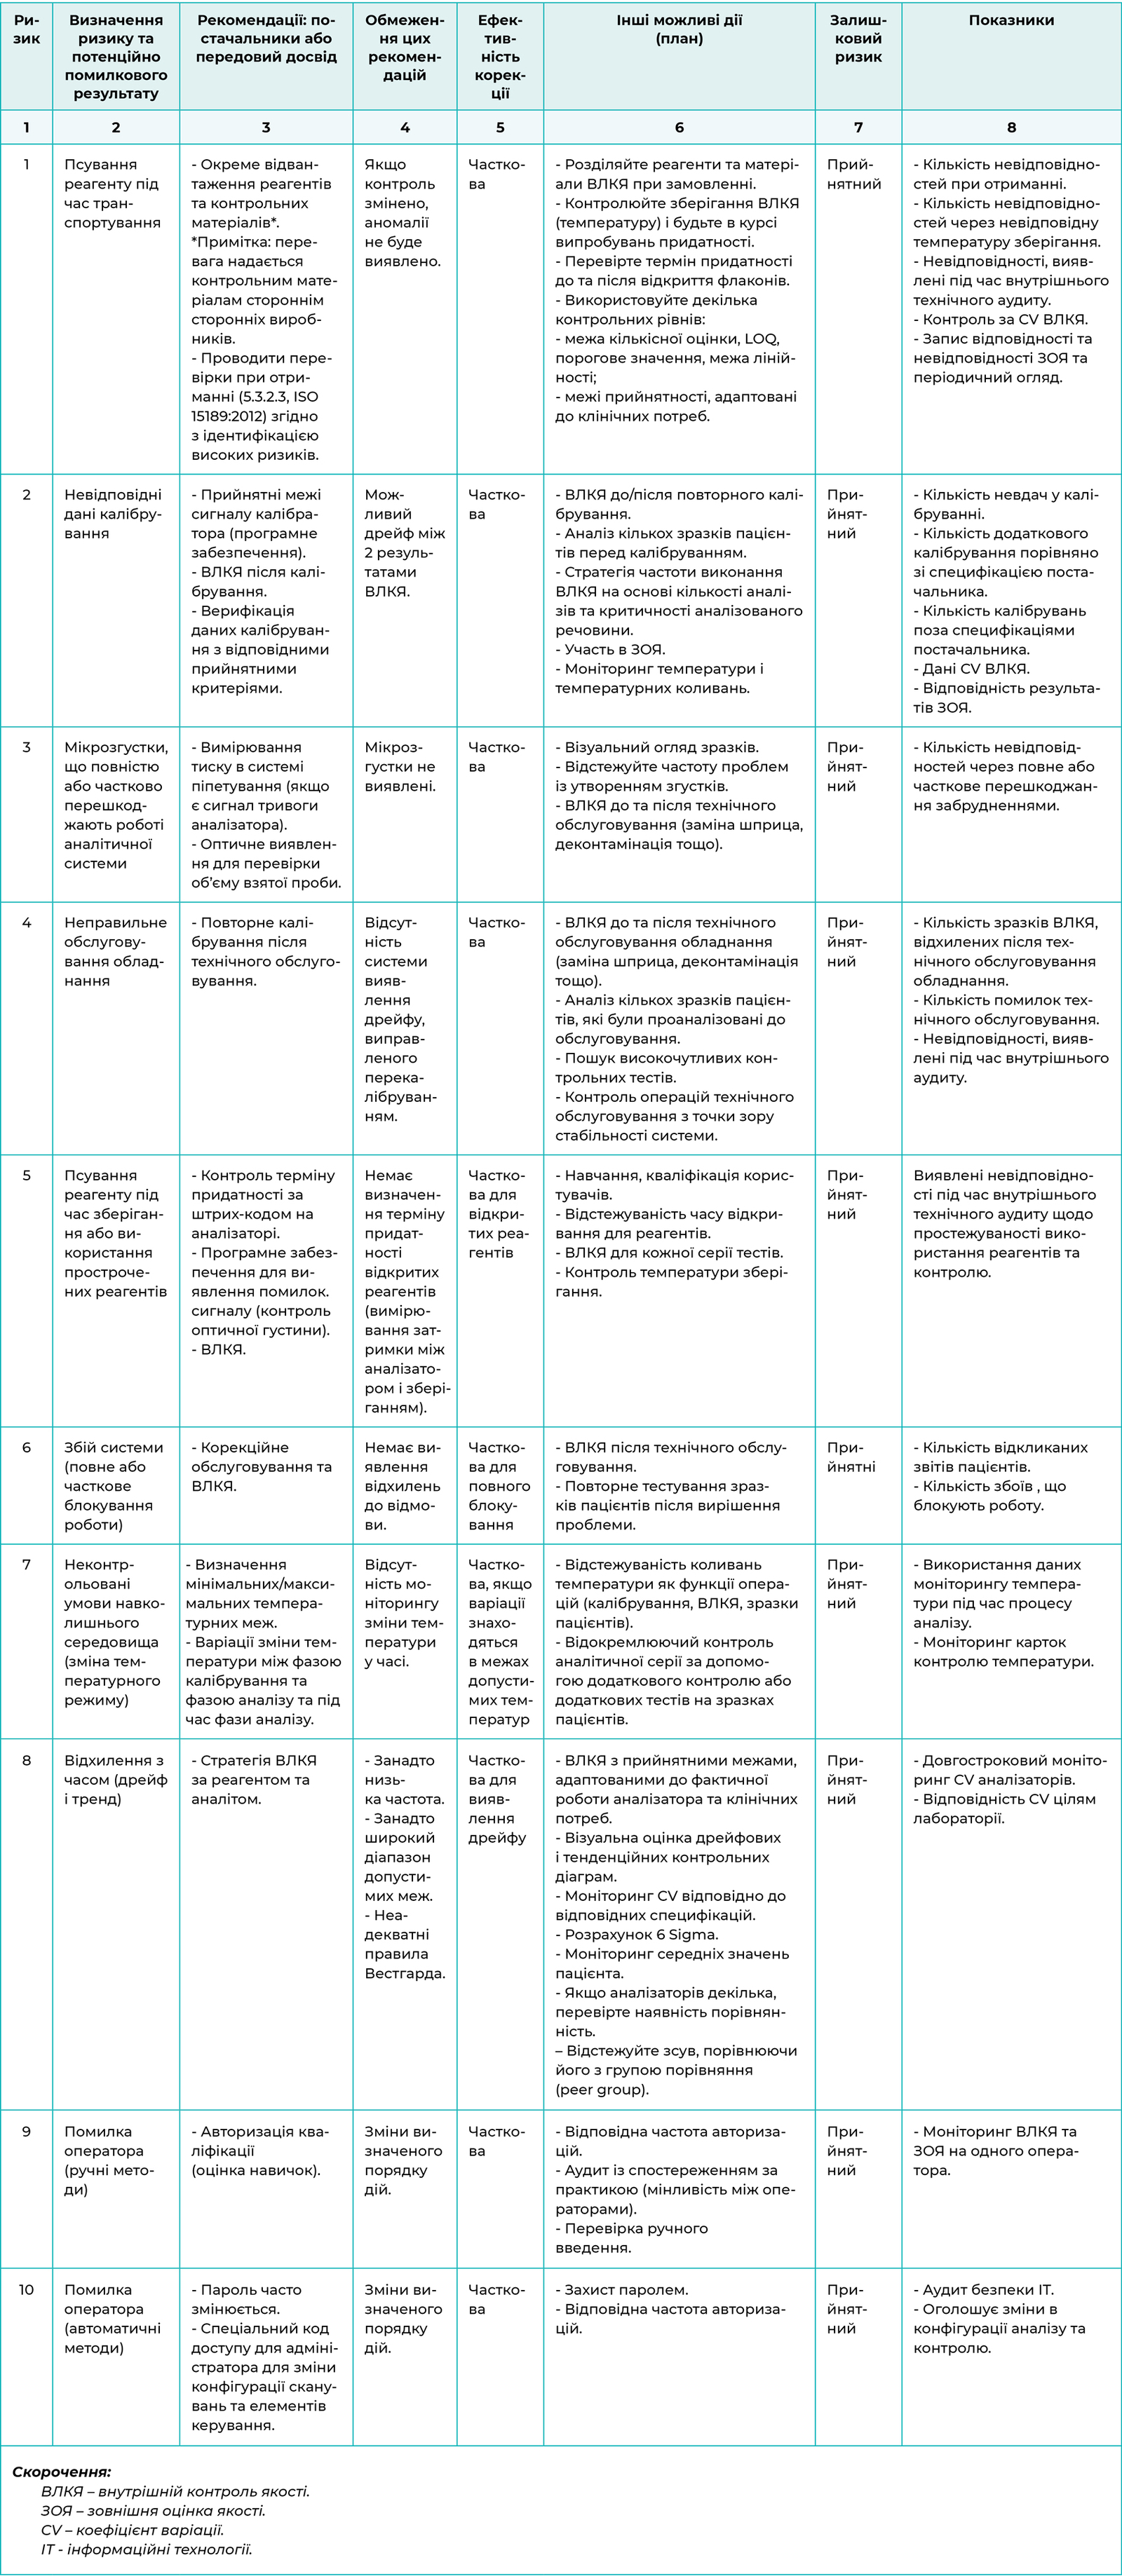 Перелік аналітичних ризиків медичної лабораторії